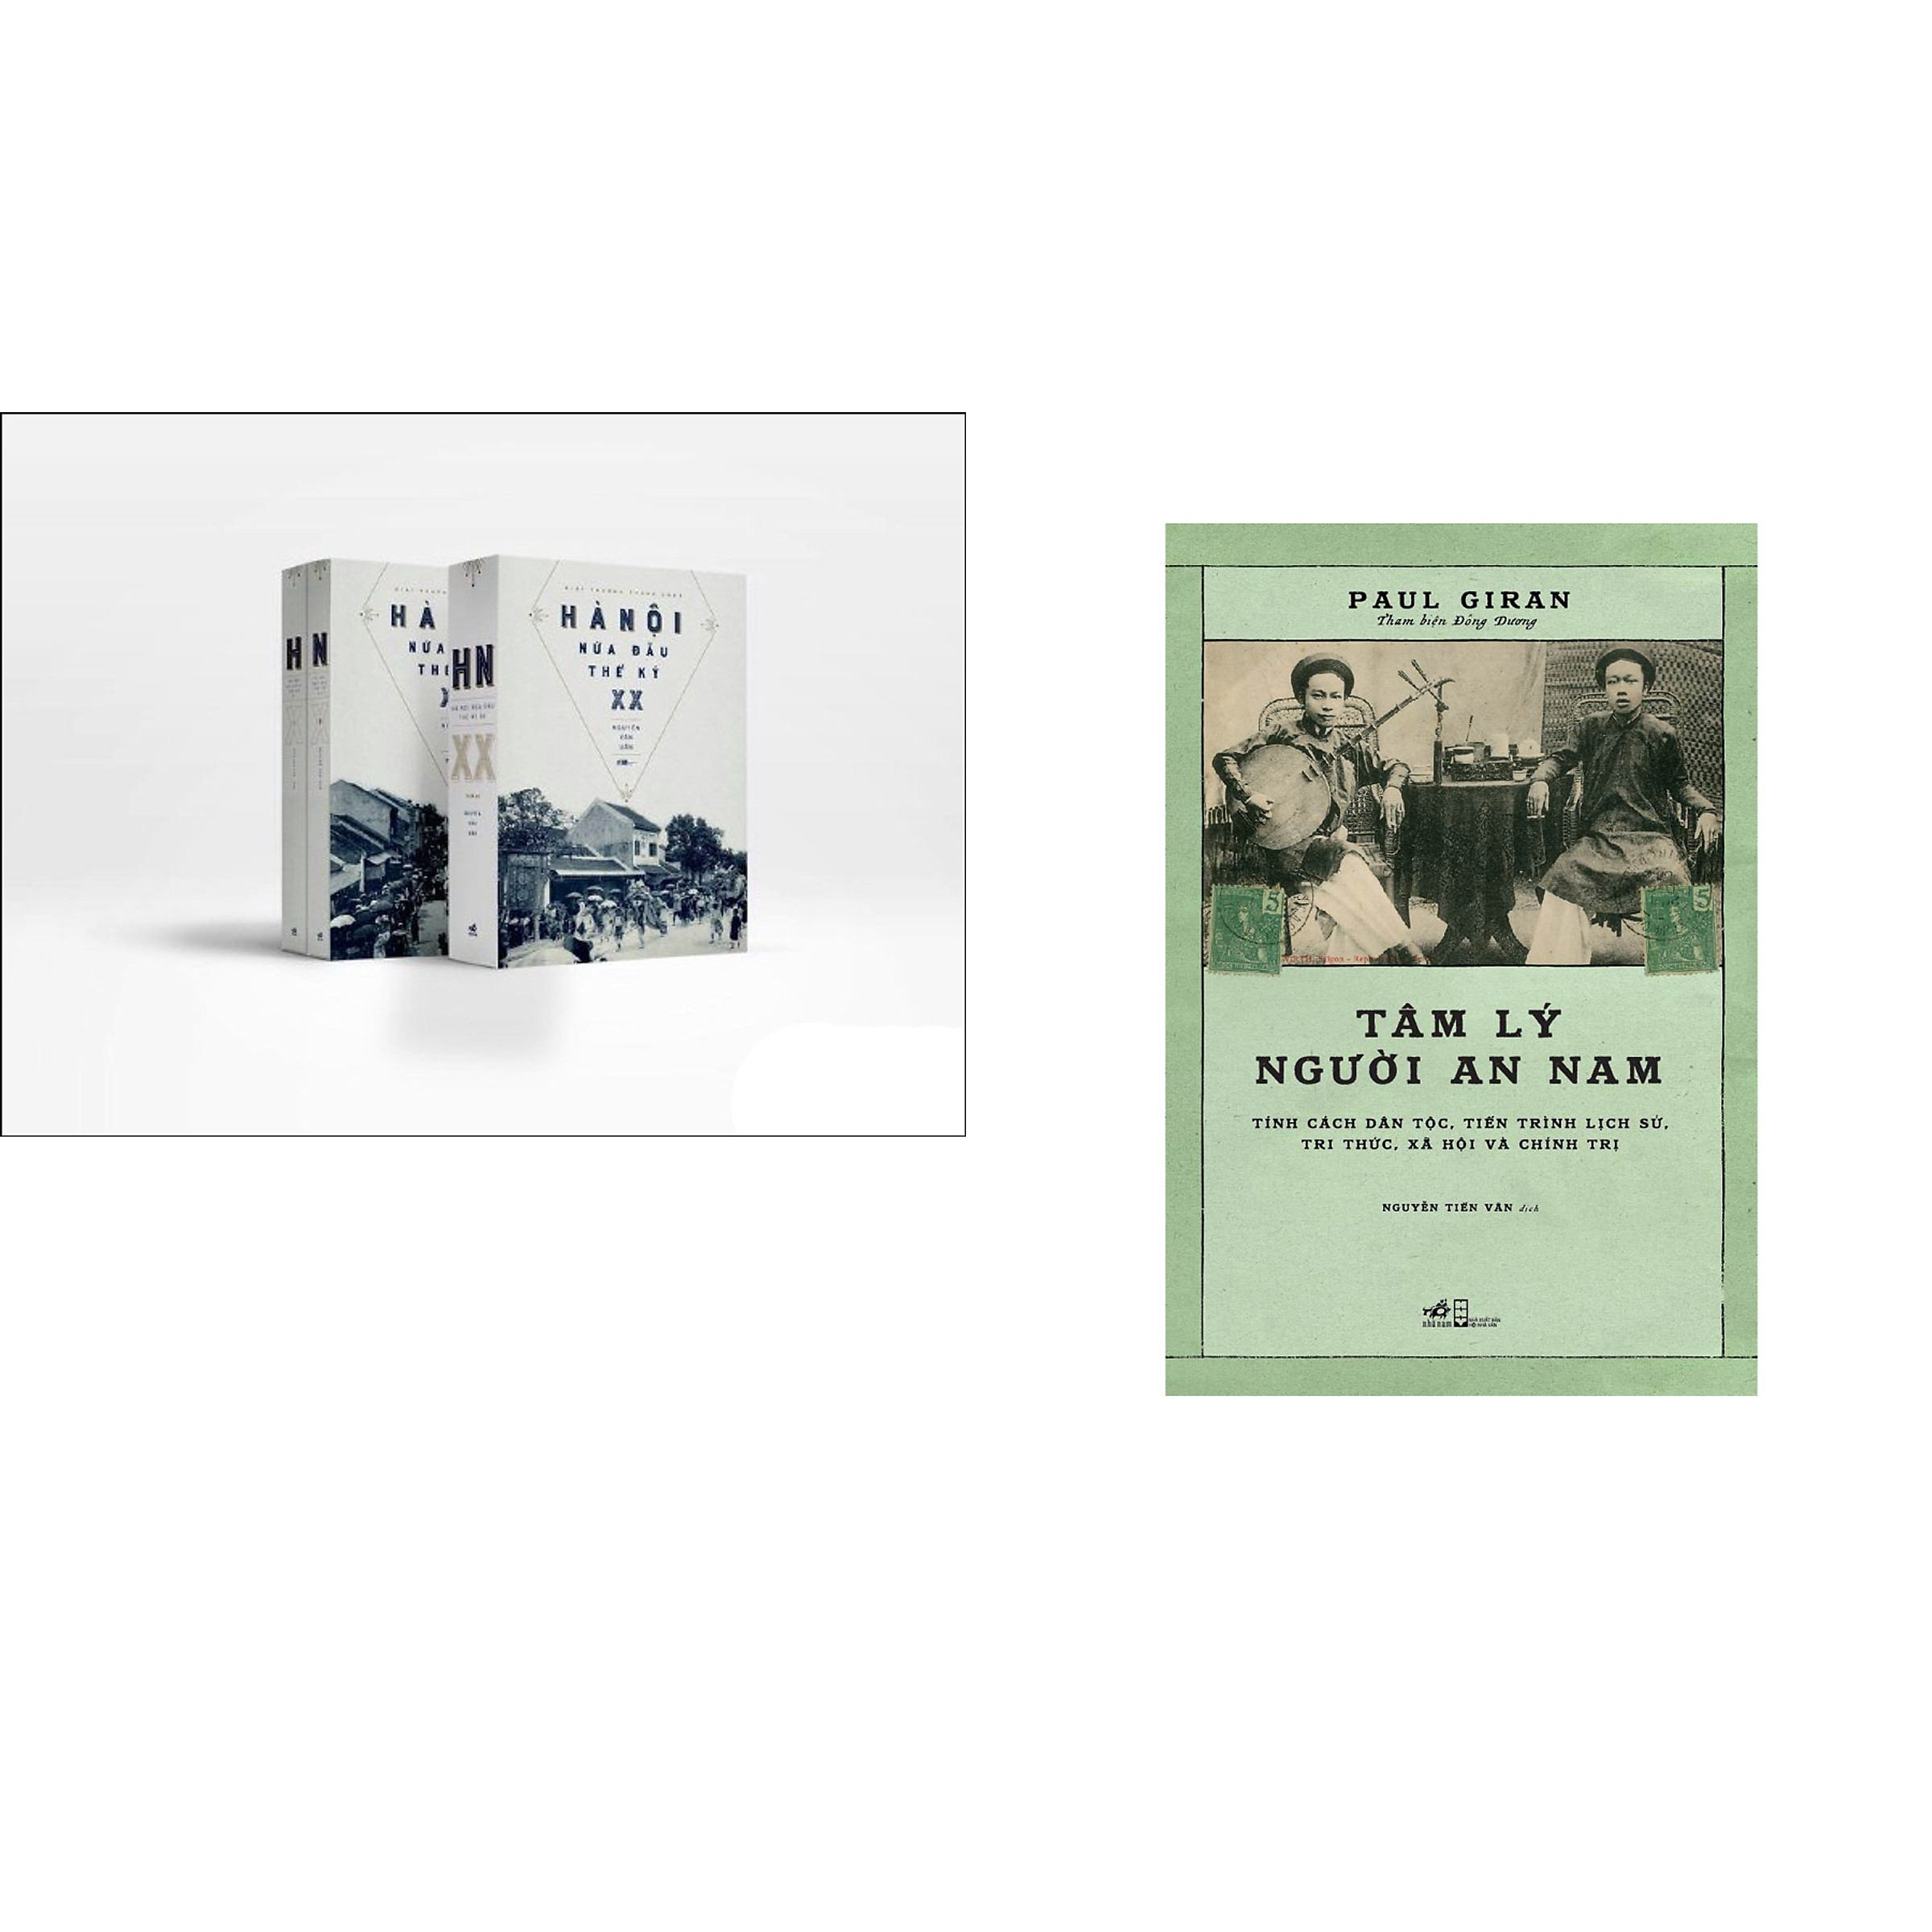 Combo 3 cuốn sách: Hà Nội nửa đầu thế kỷ XX (trọn bộ 2 tập) + Tâm lý người An nam